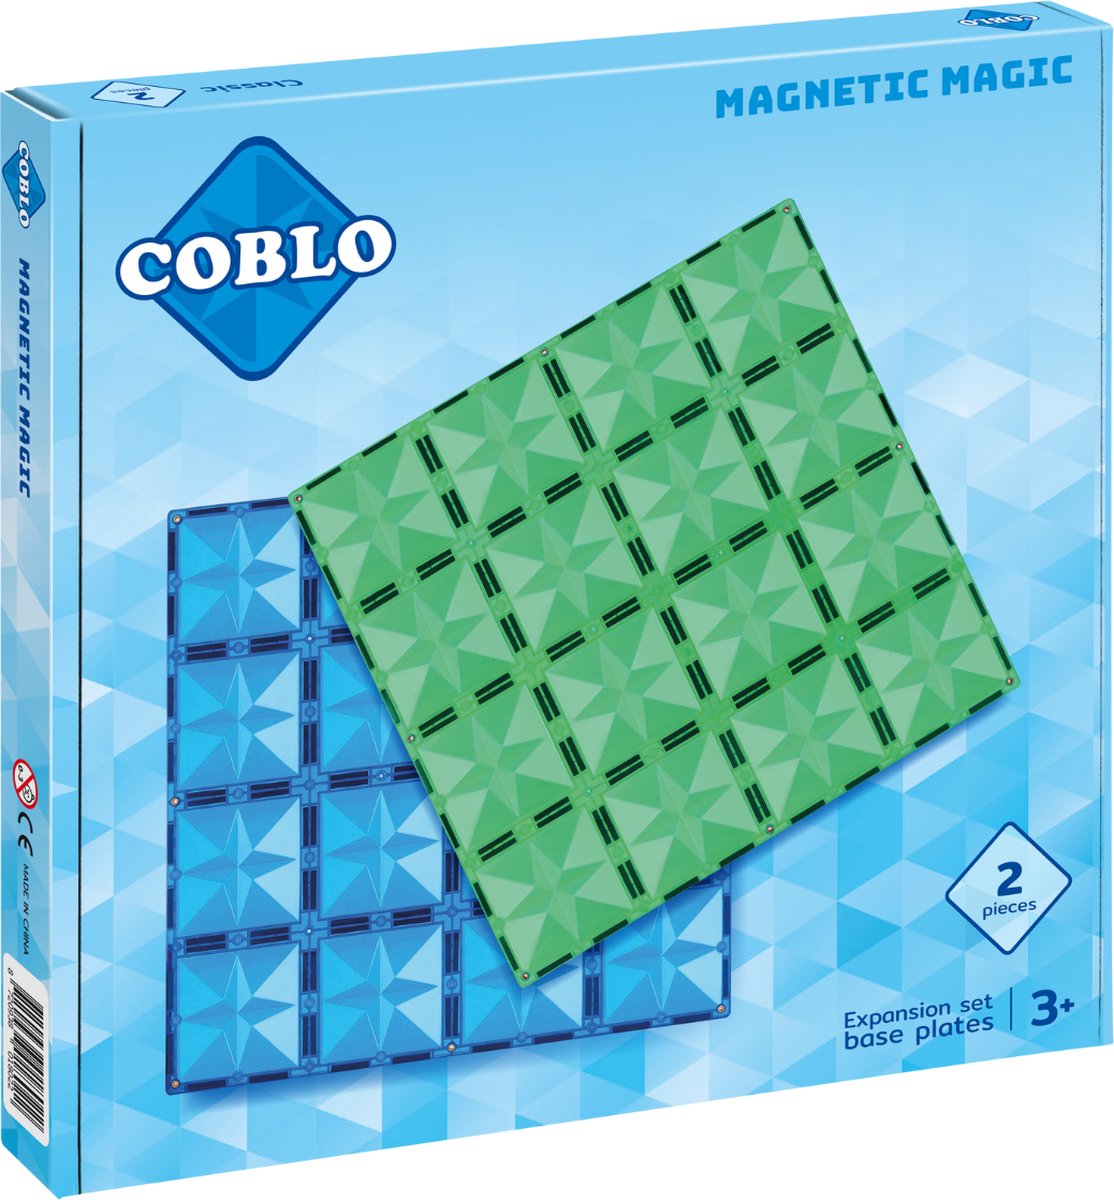 Coblo Classic Basisplaten 2 stuks - Magnetisch speelgoed - Montessori speelgoed - Bouwplaat - STEM speelgoed - Cadeau kind - Speelgoed 3 jaar t/m 12 jaar